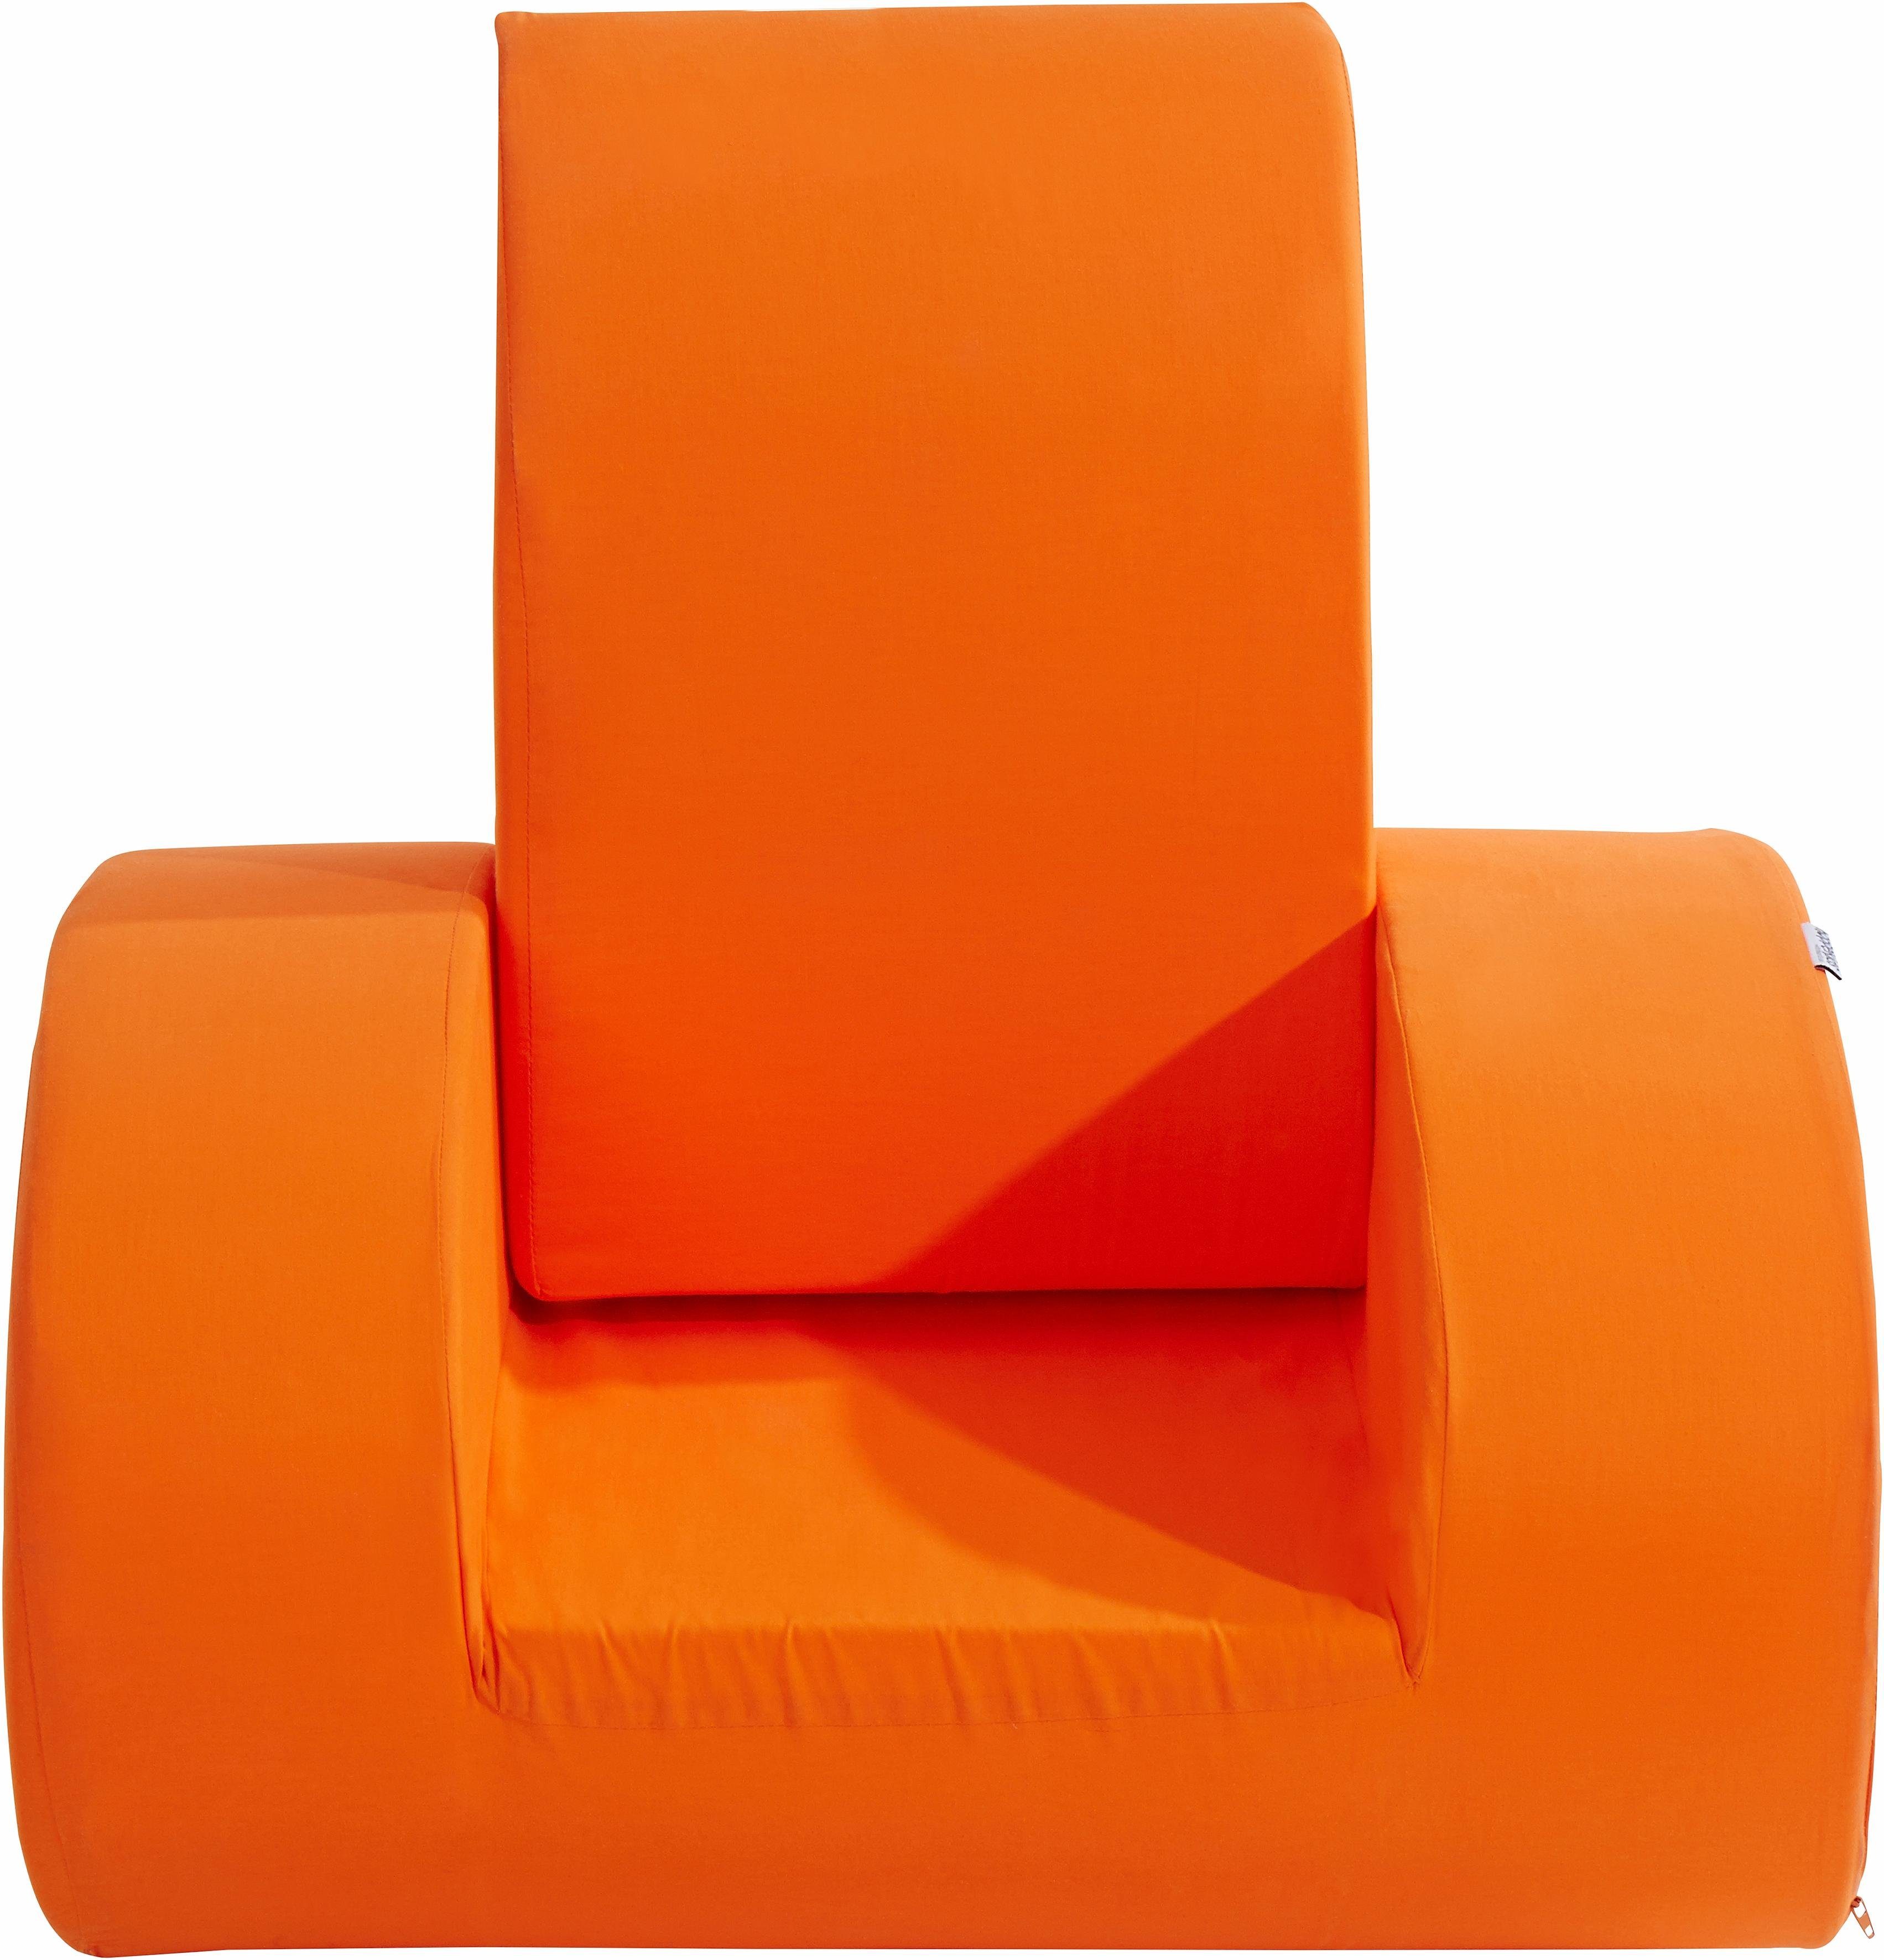 Hoppekids Sessel, Kindersessel Schaukelstuhl in 2 Farben orange